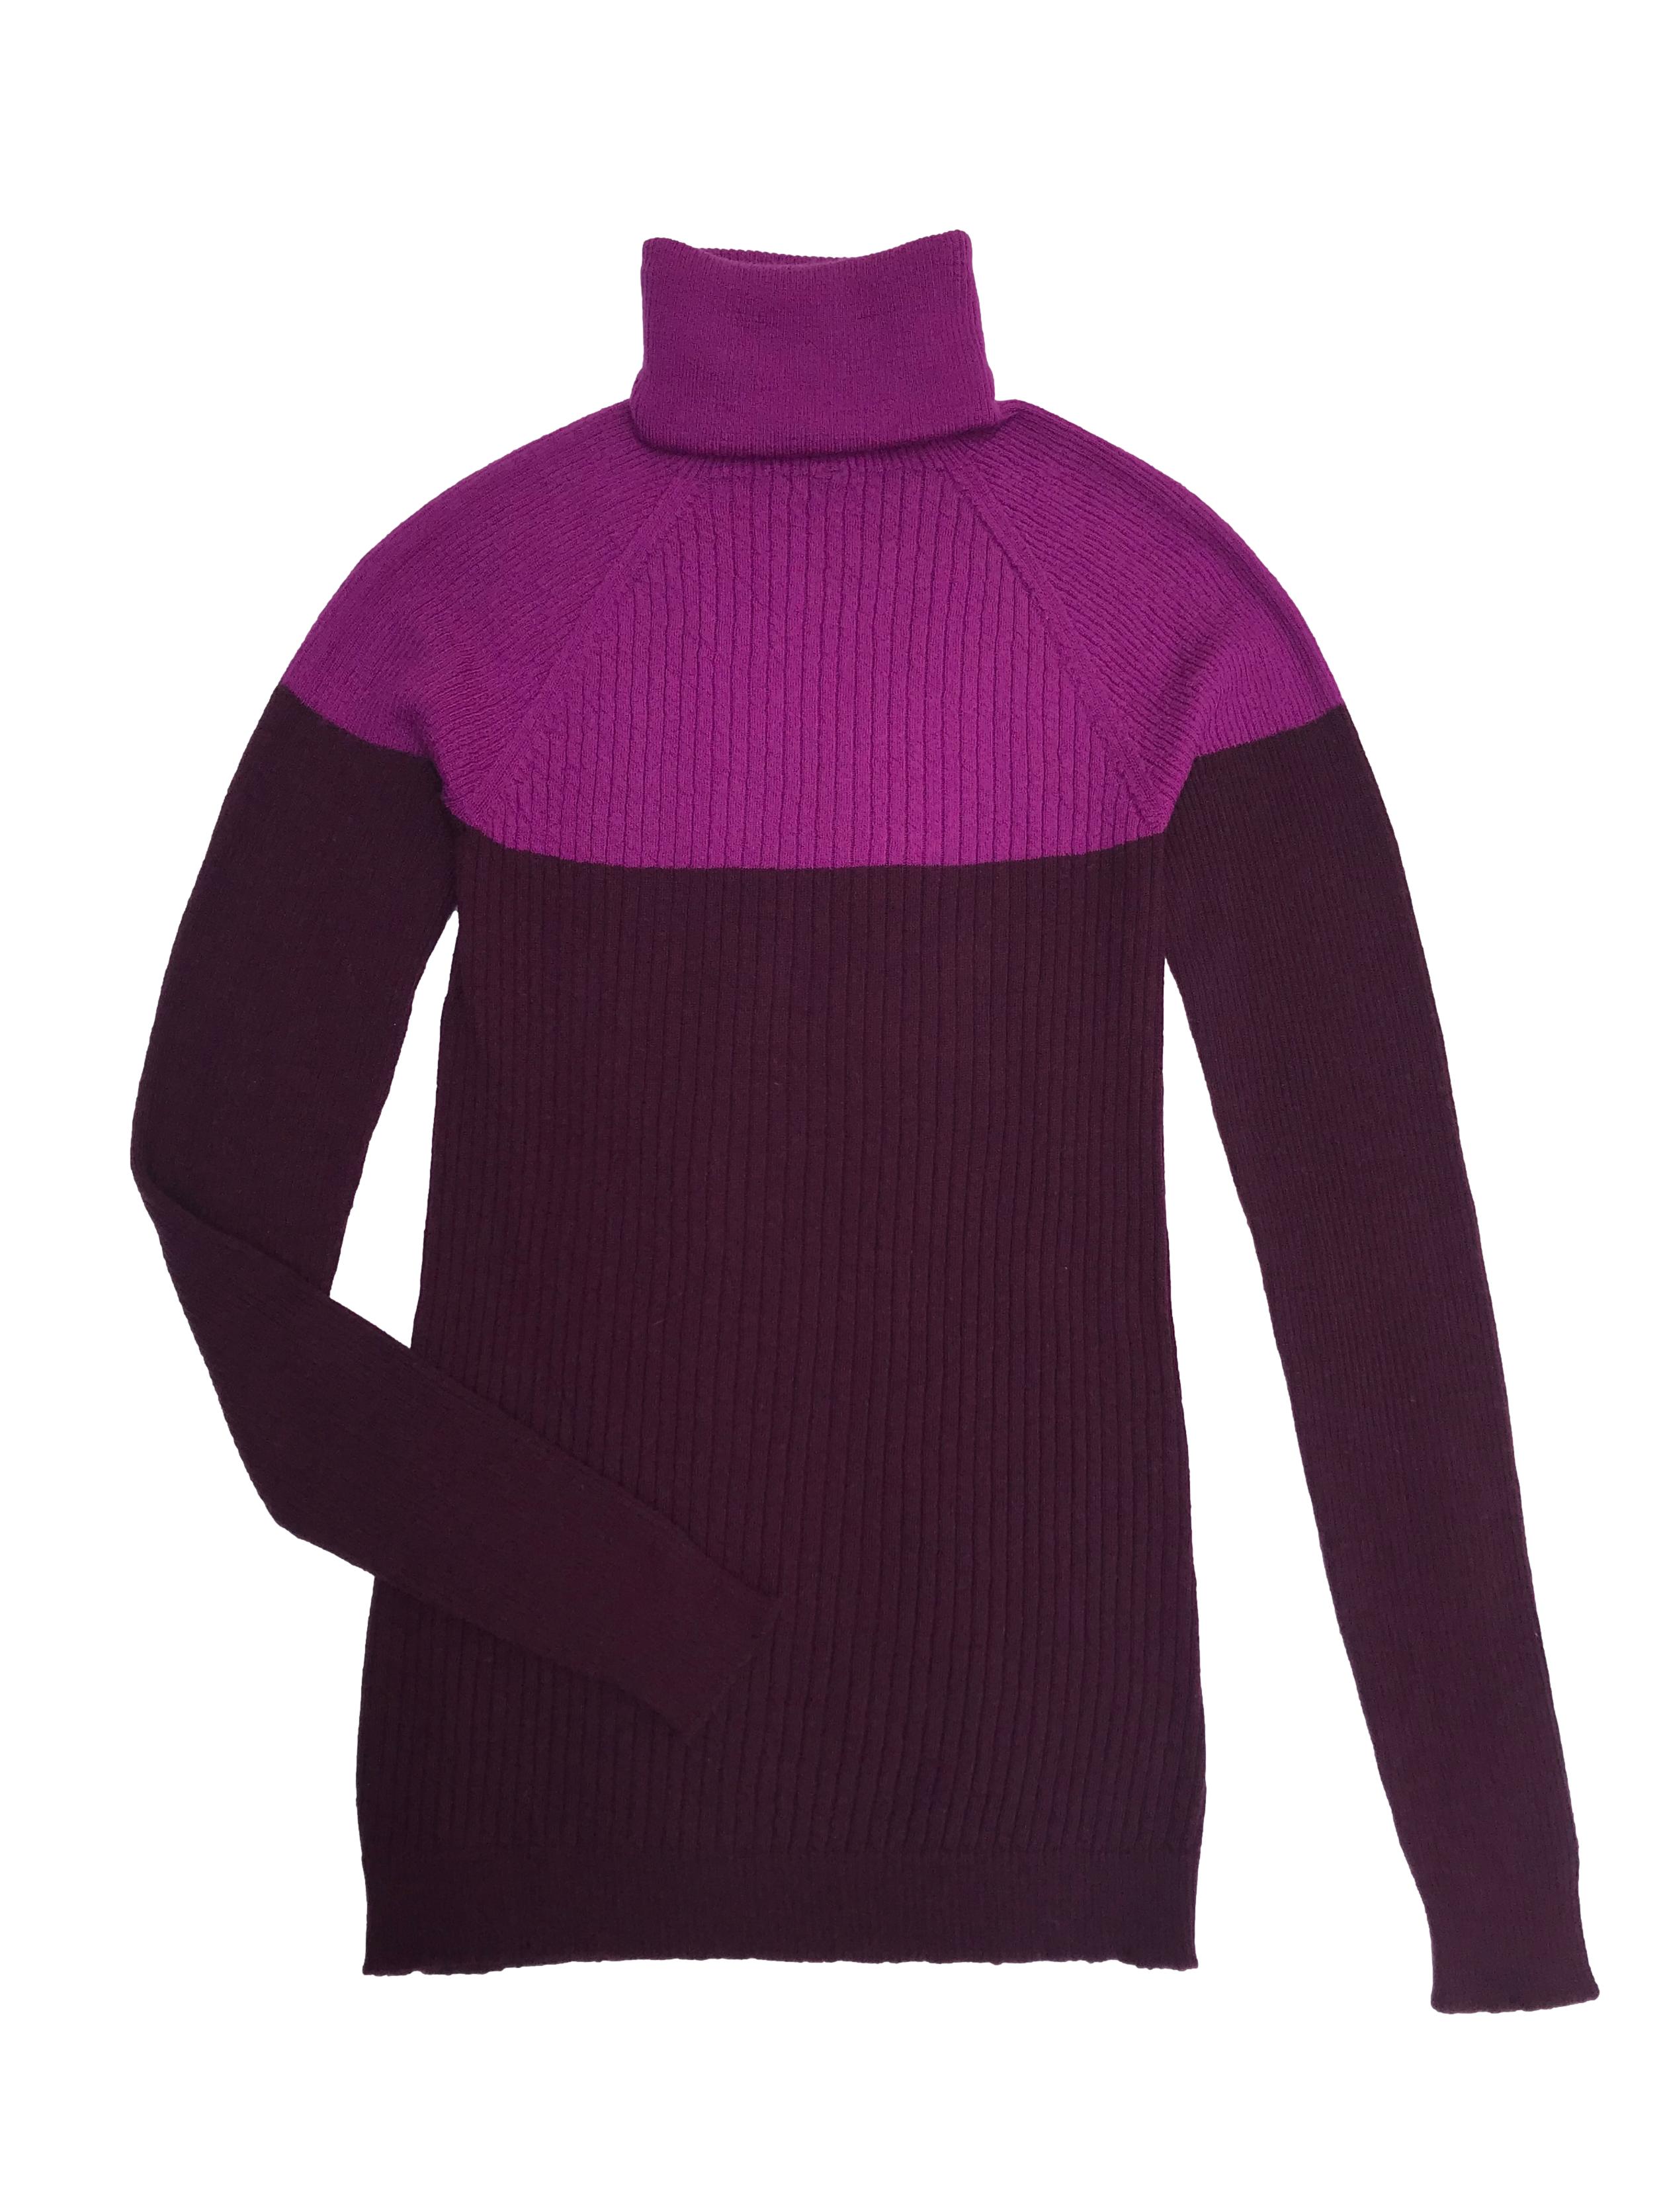 Suéter Benetton 50% lana 30% lana 20% alcrílico en tonos morados, cuello tortuga y textura acanalada. Precio original S/ 269